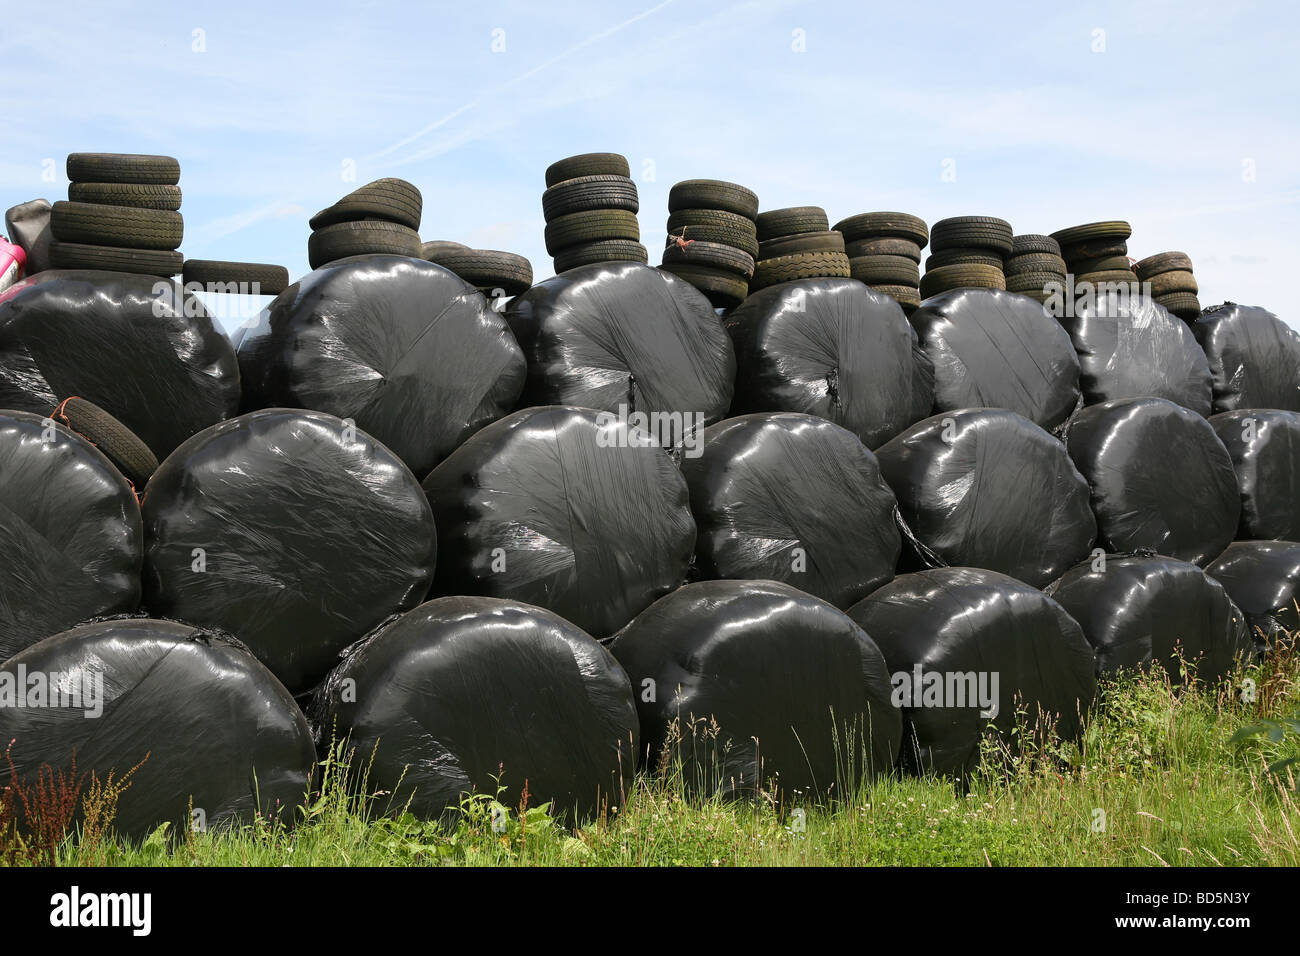 Stroh Kautionen in Folie gewickelt und mit Reifen auf einem englischen Bauernhof niedergedrückt Stockfoto